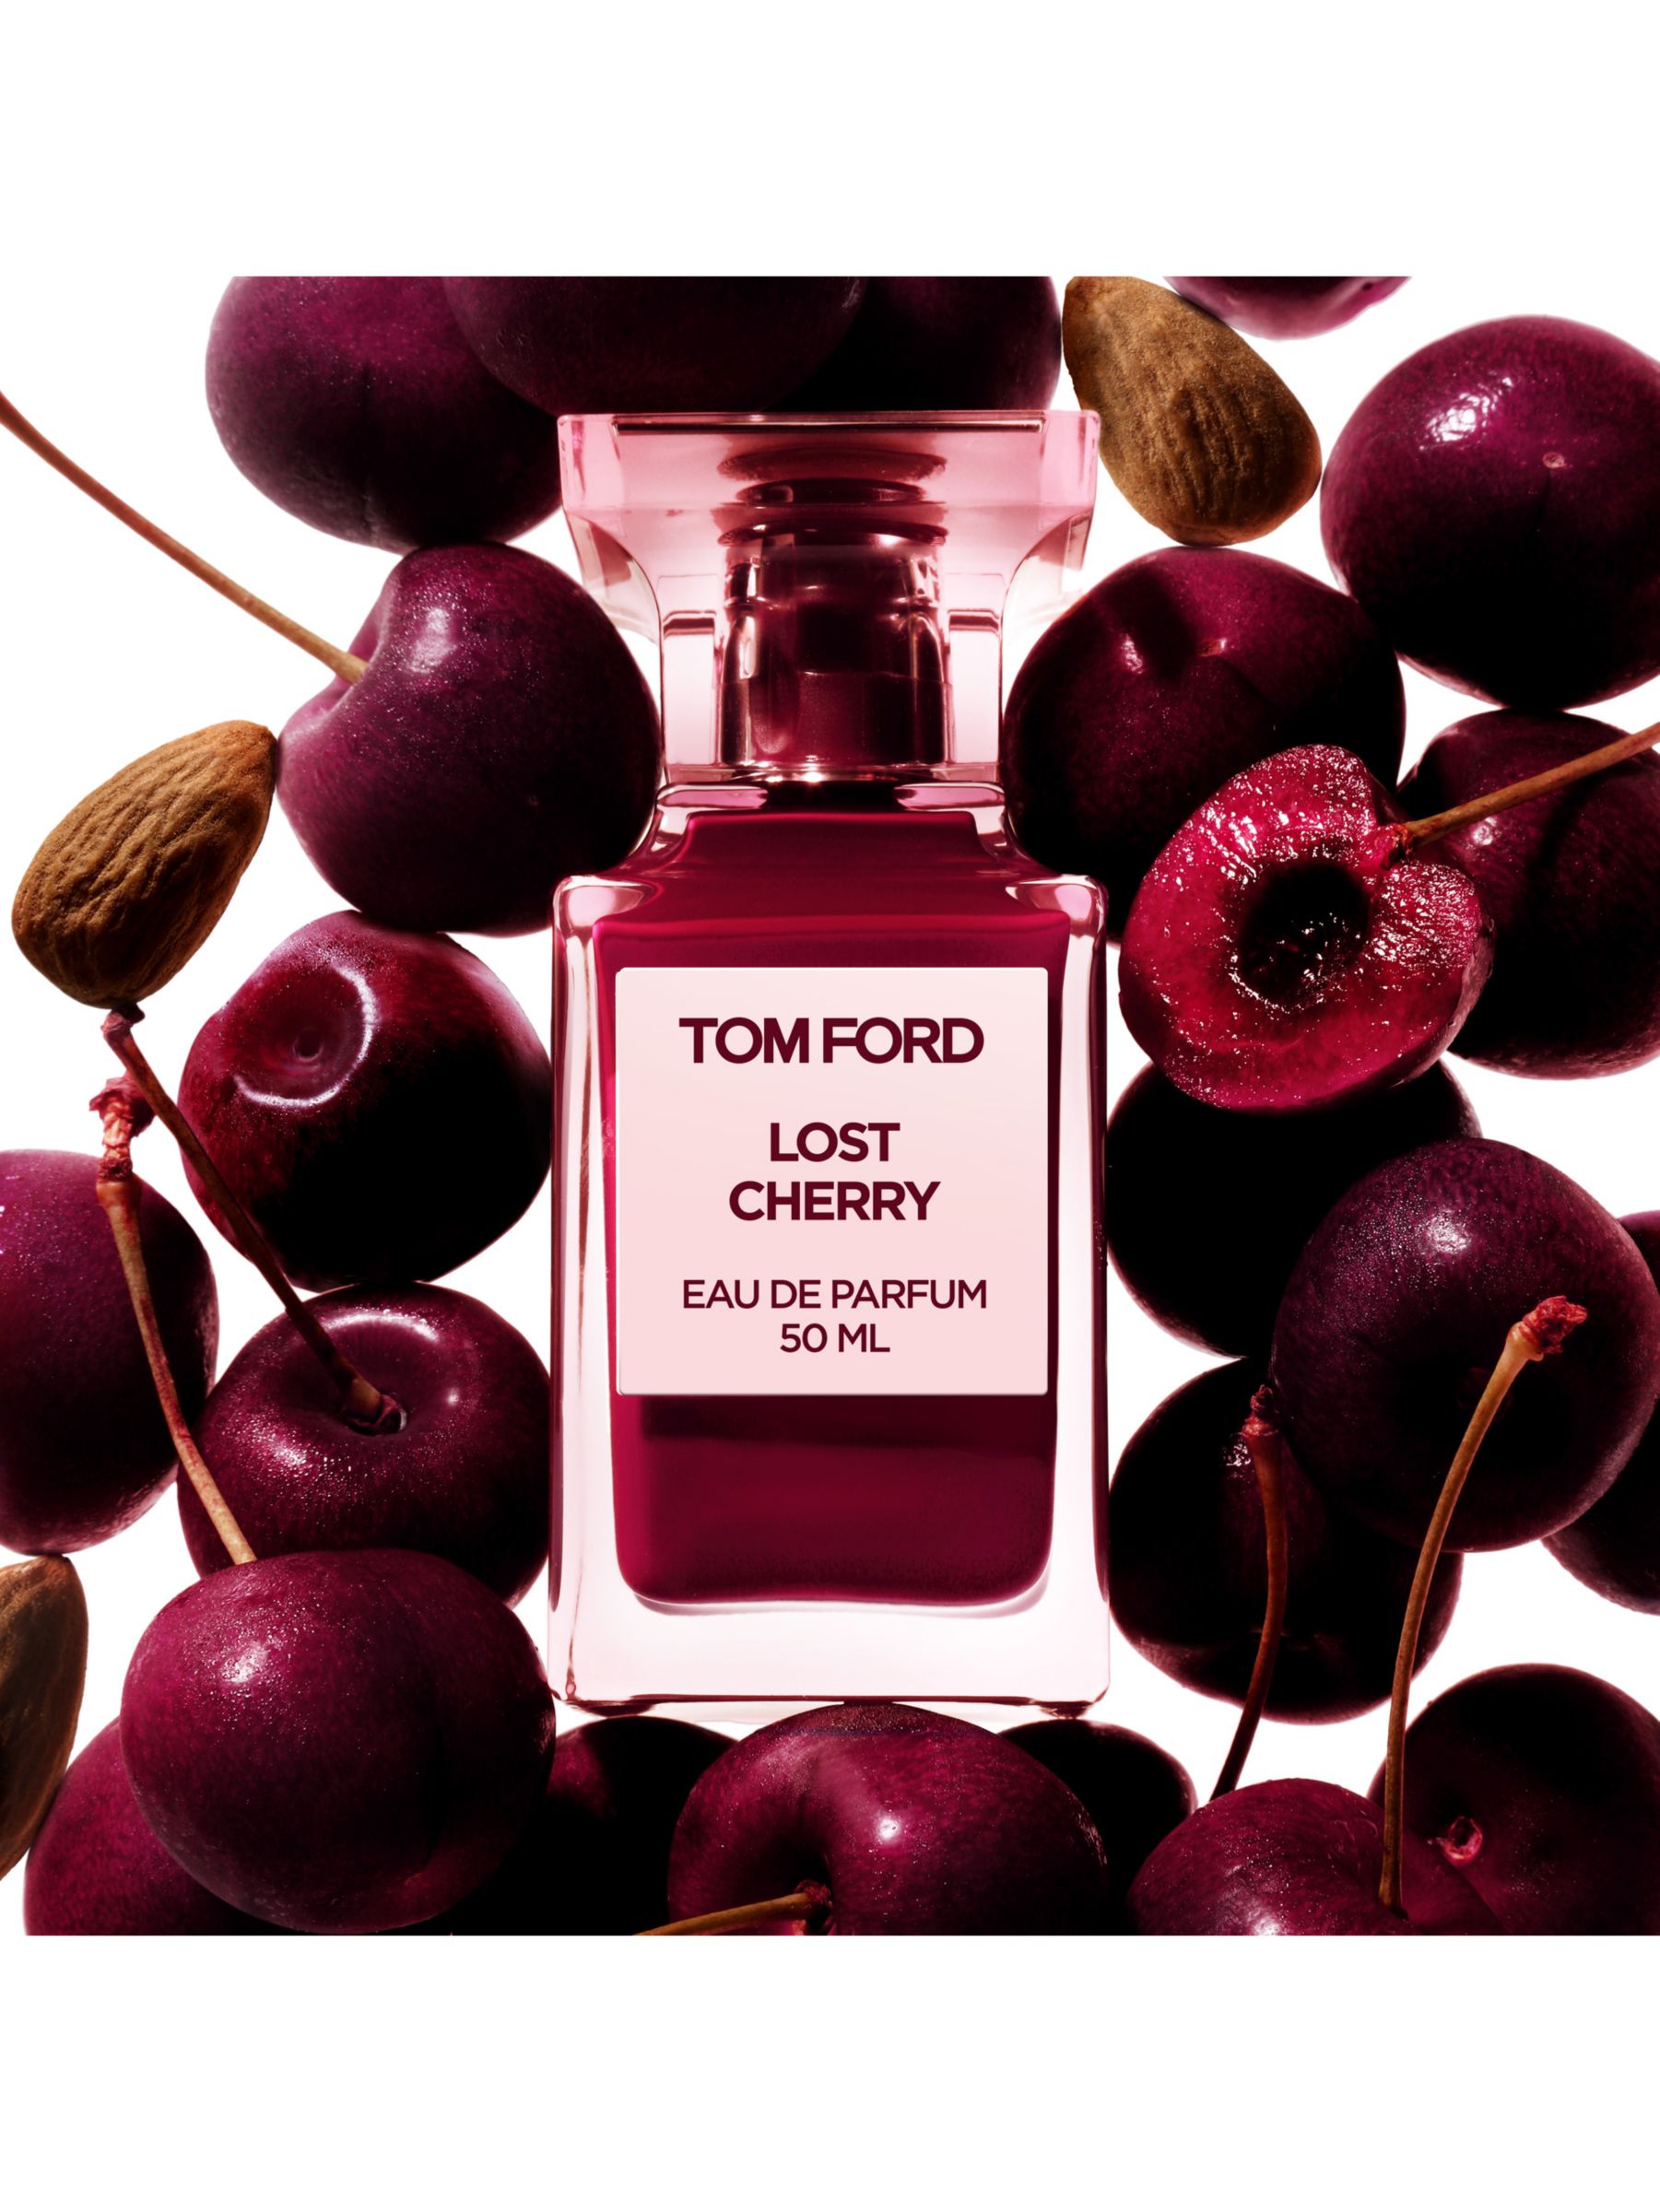 TOM FORD Private Blend Lost Cherry Eau de Parfum, 50ml